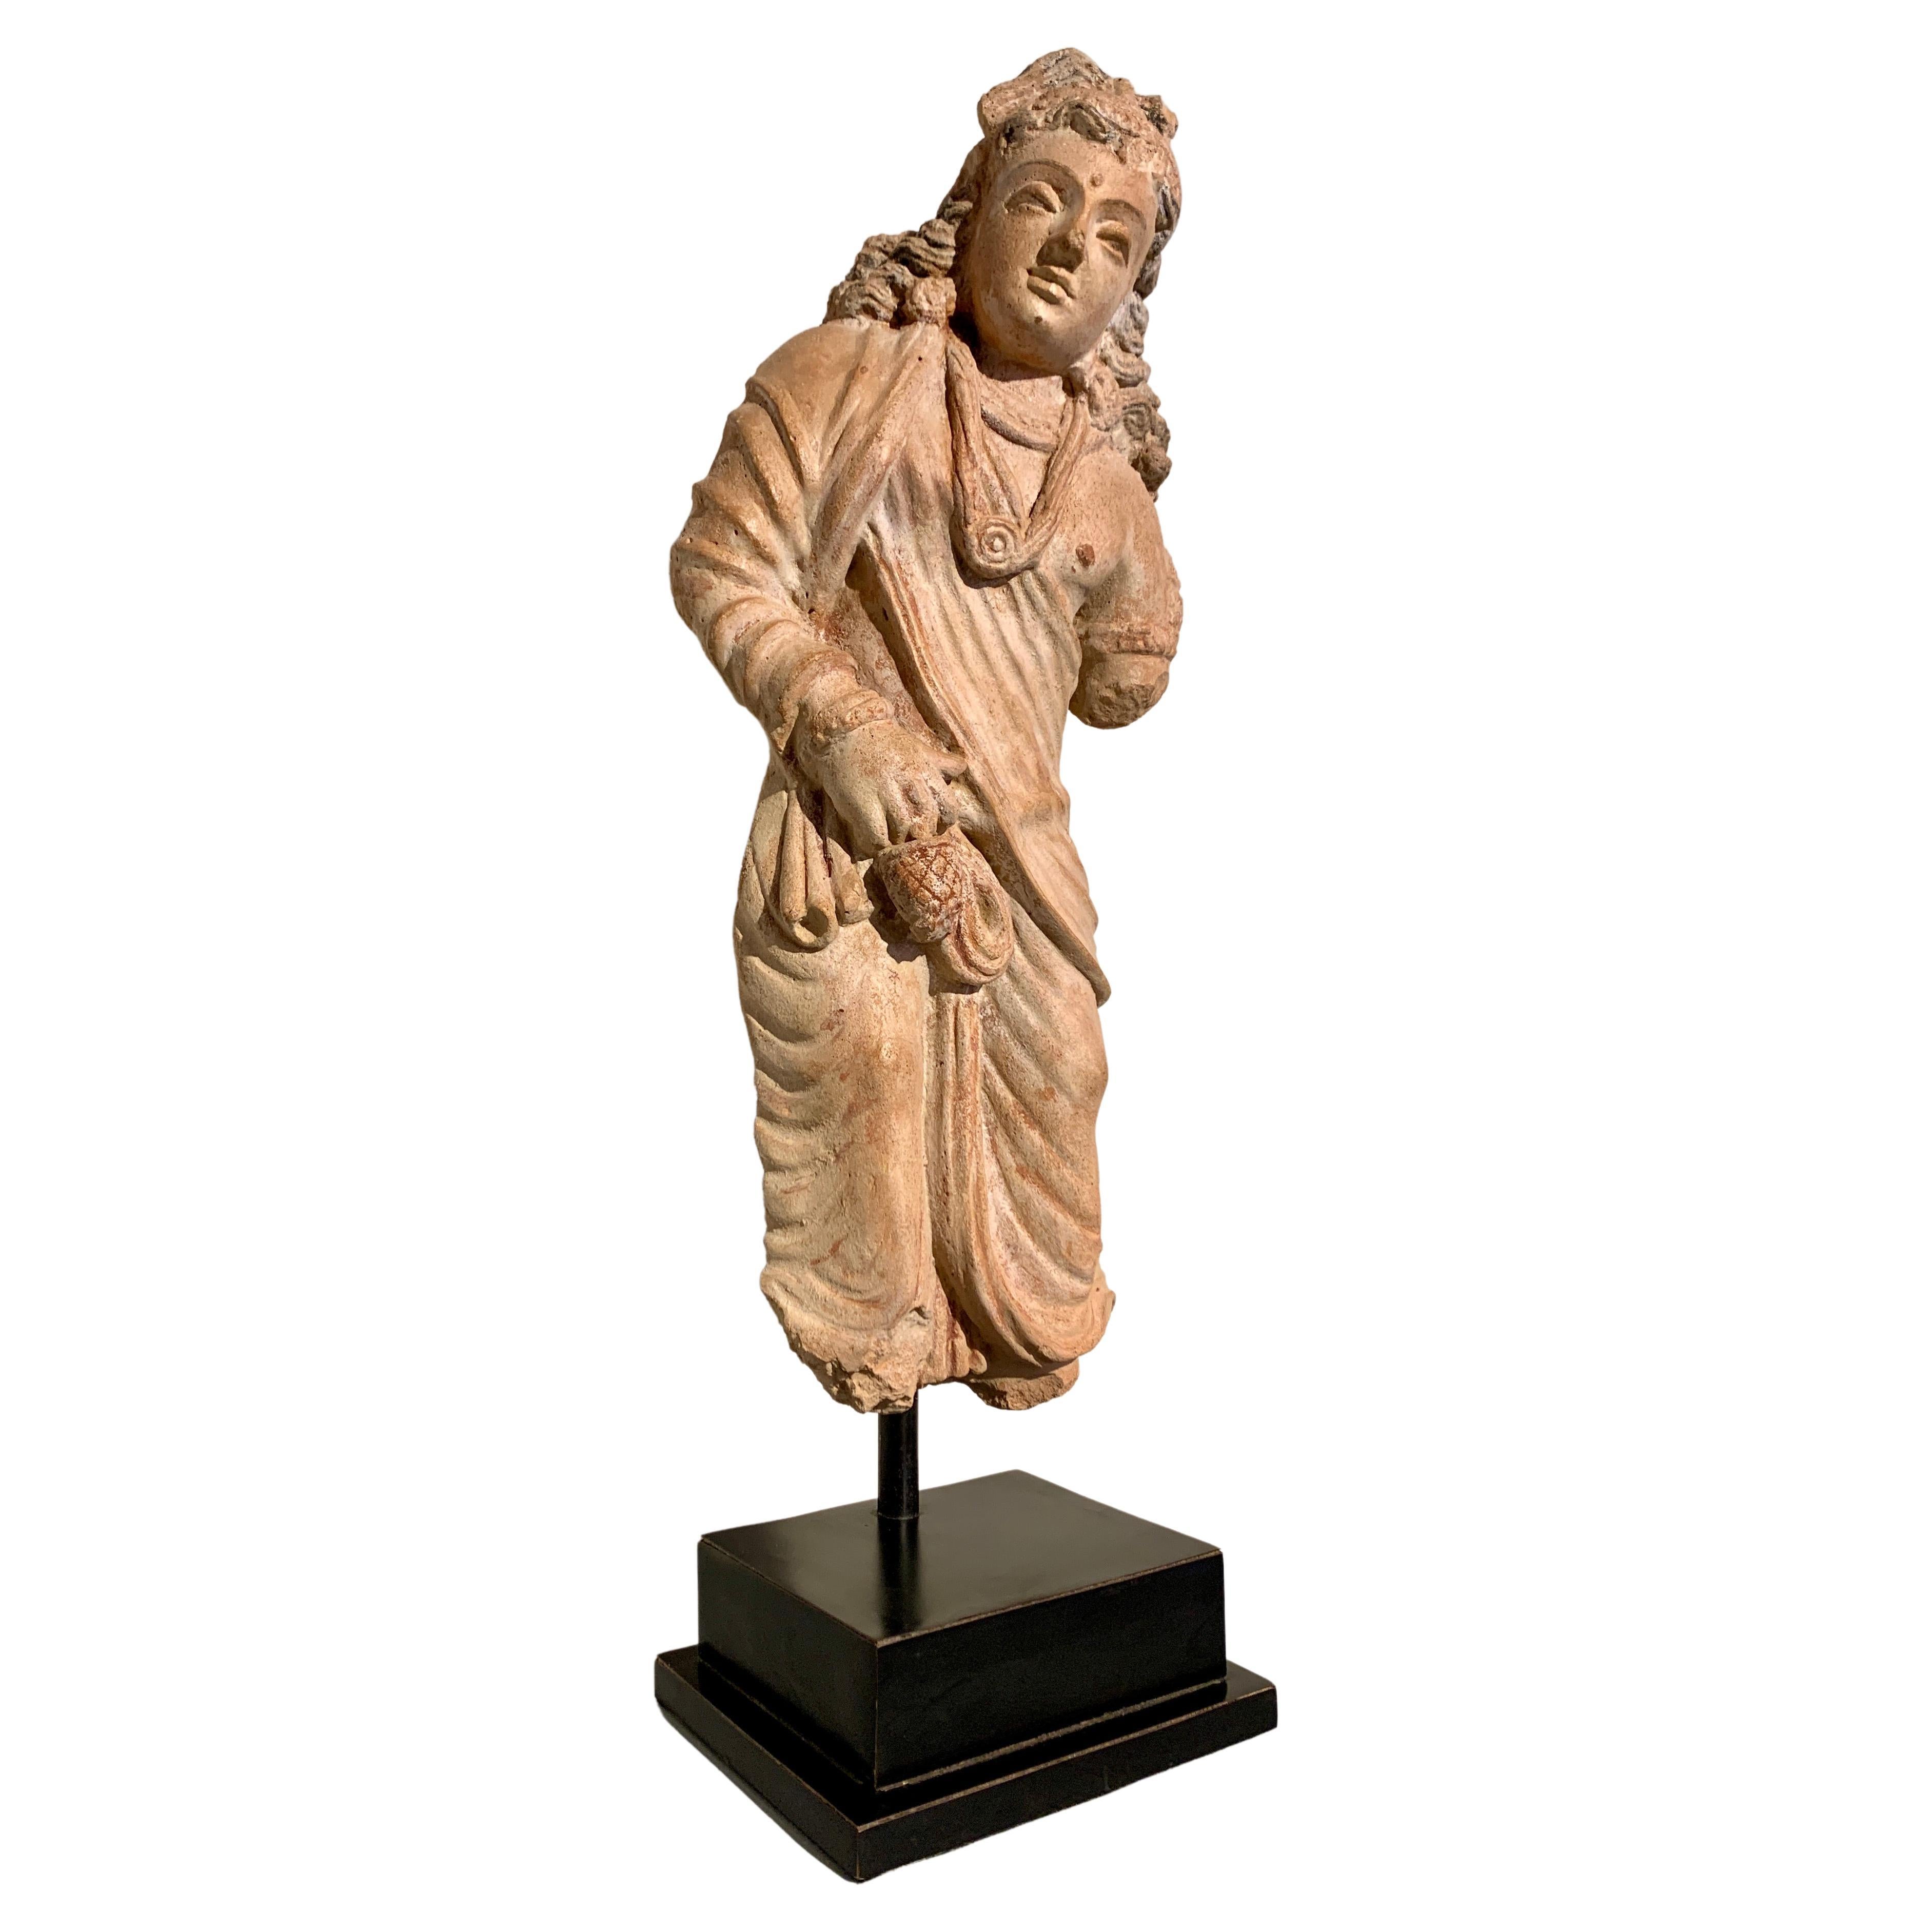 Gandharan Terracotta Figure of the Bodhisattva Maitreya, 4th-6th Century